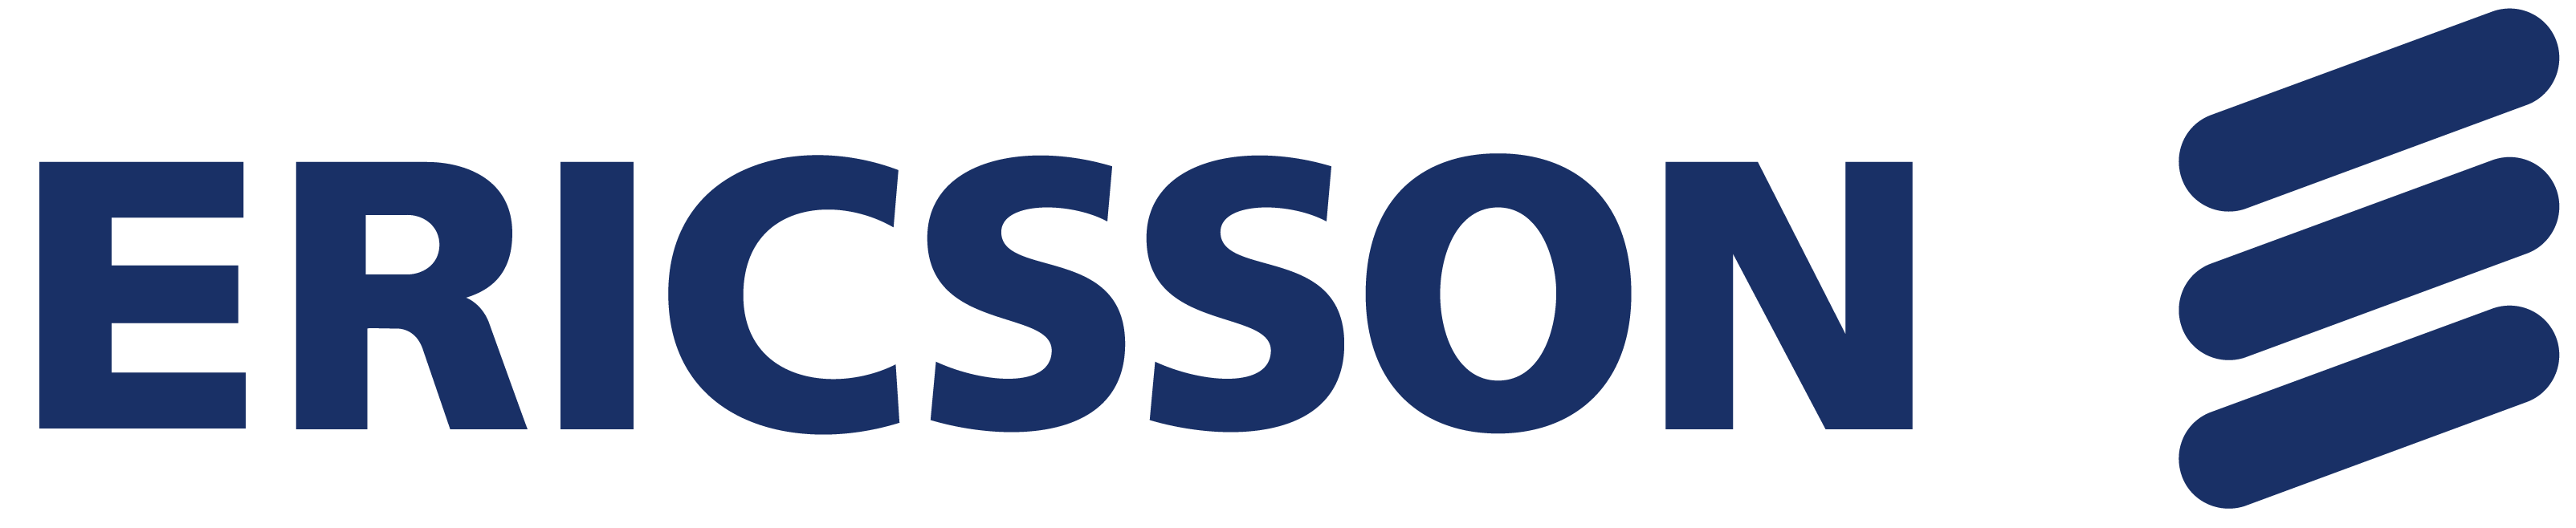 ericsson_logo_